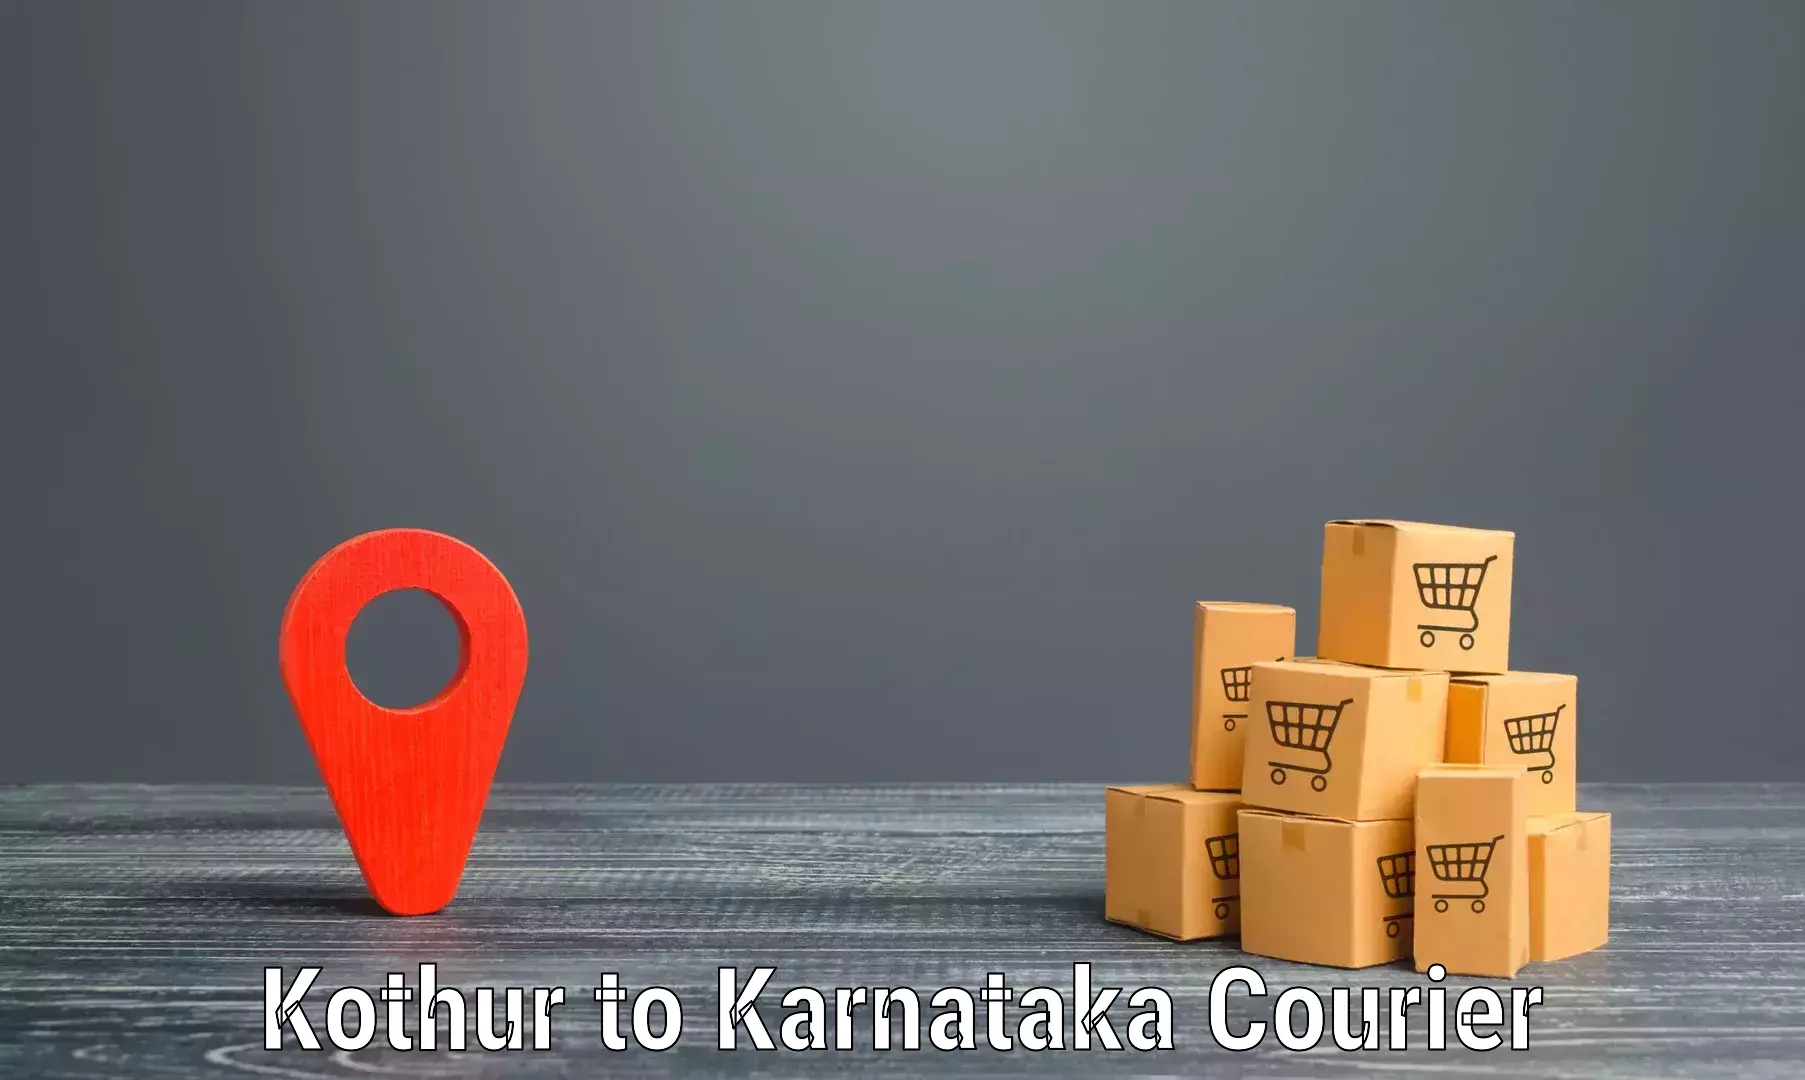 Modern courier technology in Kothur to Chikkaballapur